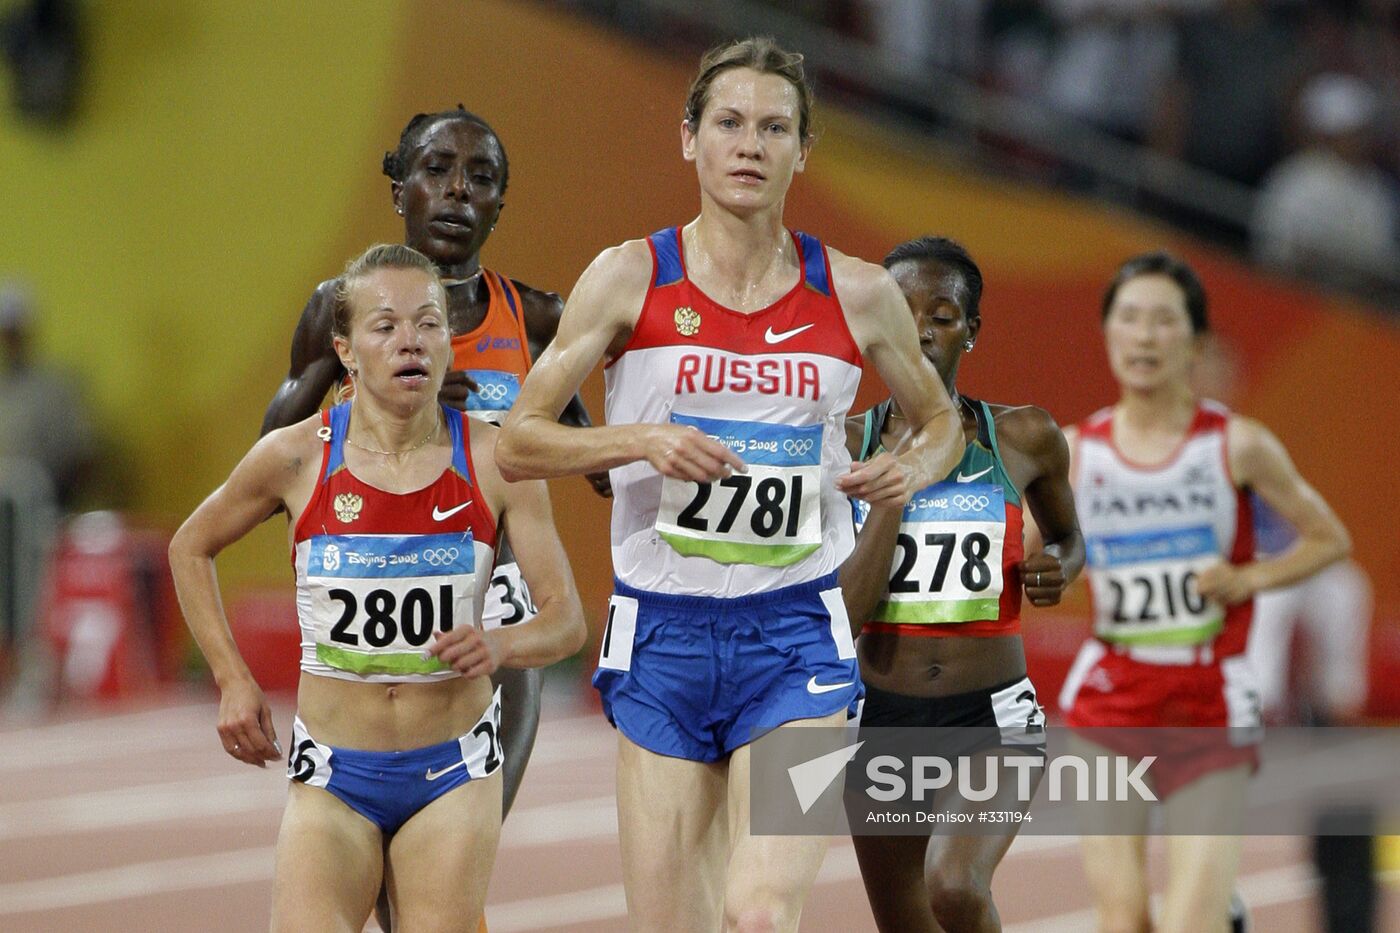 August 16, Beijing 2008 Olympics